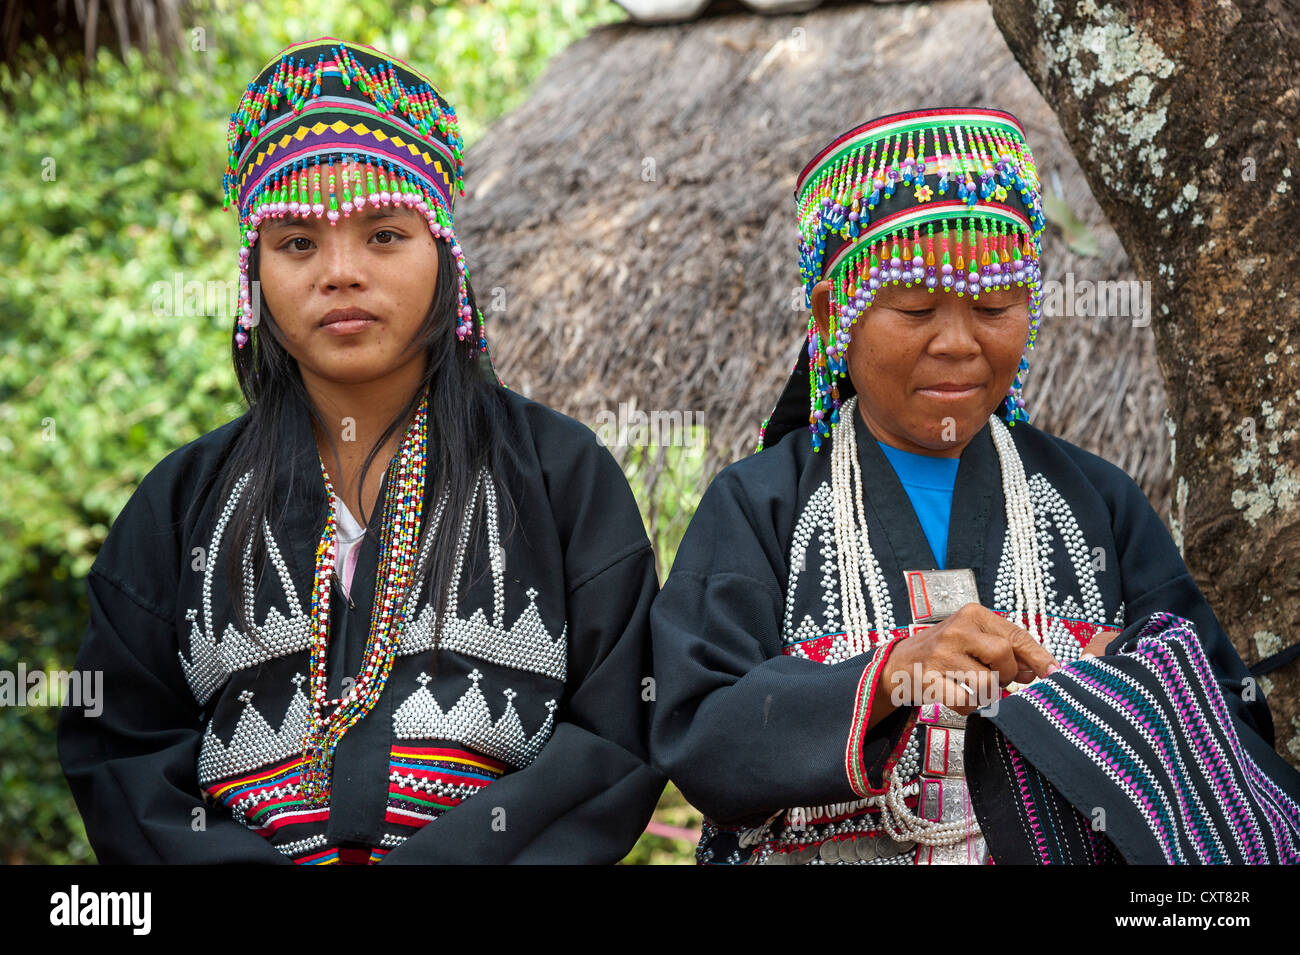 Traditionell gekleideten Frauen aus der Black Hmong Bergstämme, ethnische Minderheit aus Ostasien, Handarbeiten, Stickerei zu tun Stockfoto